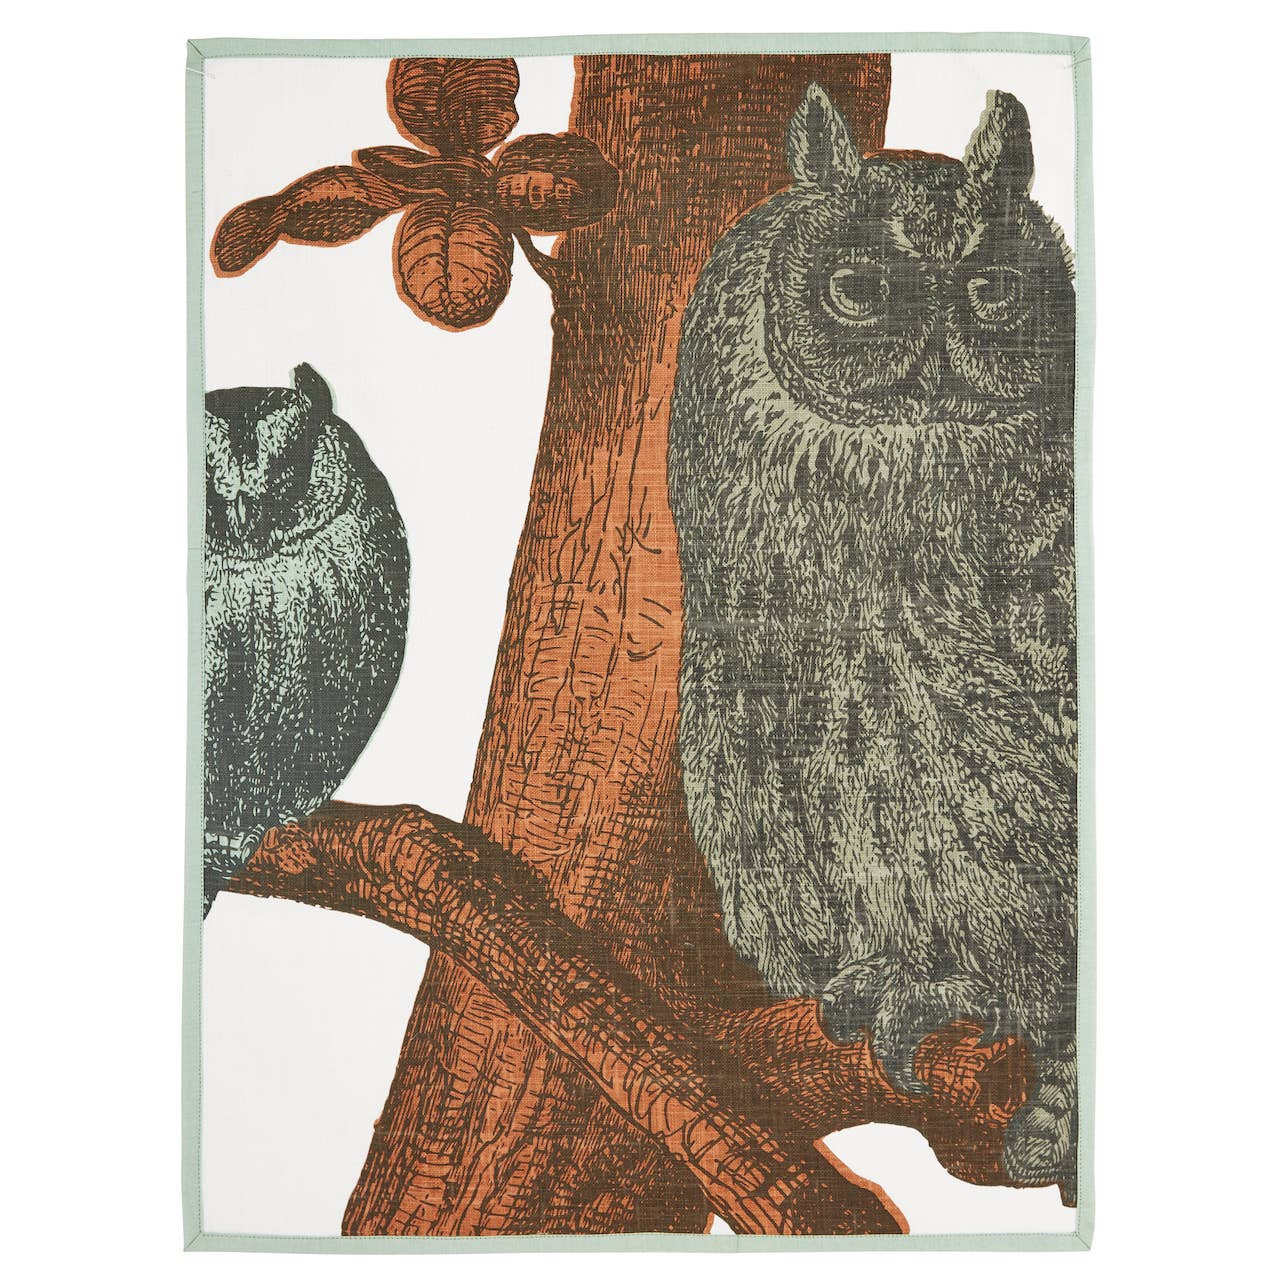 Turkey & Owl Tea Towel Set